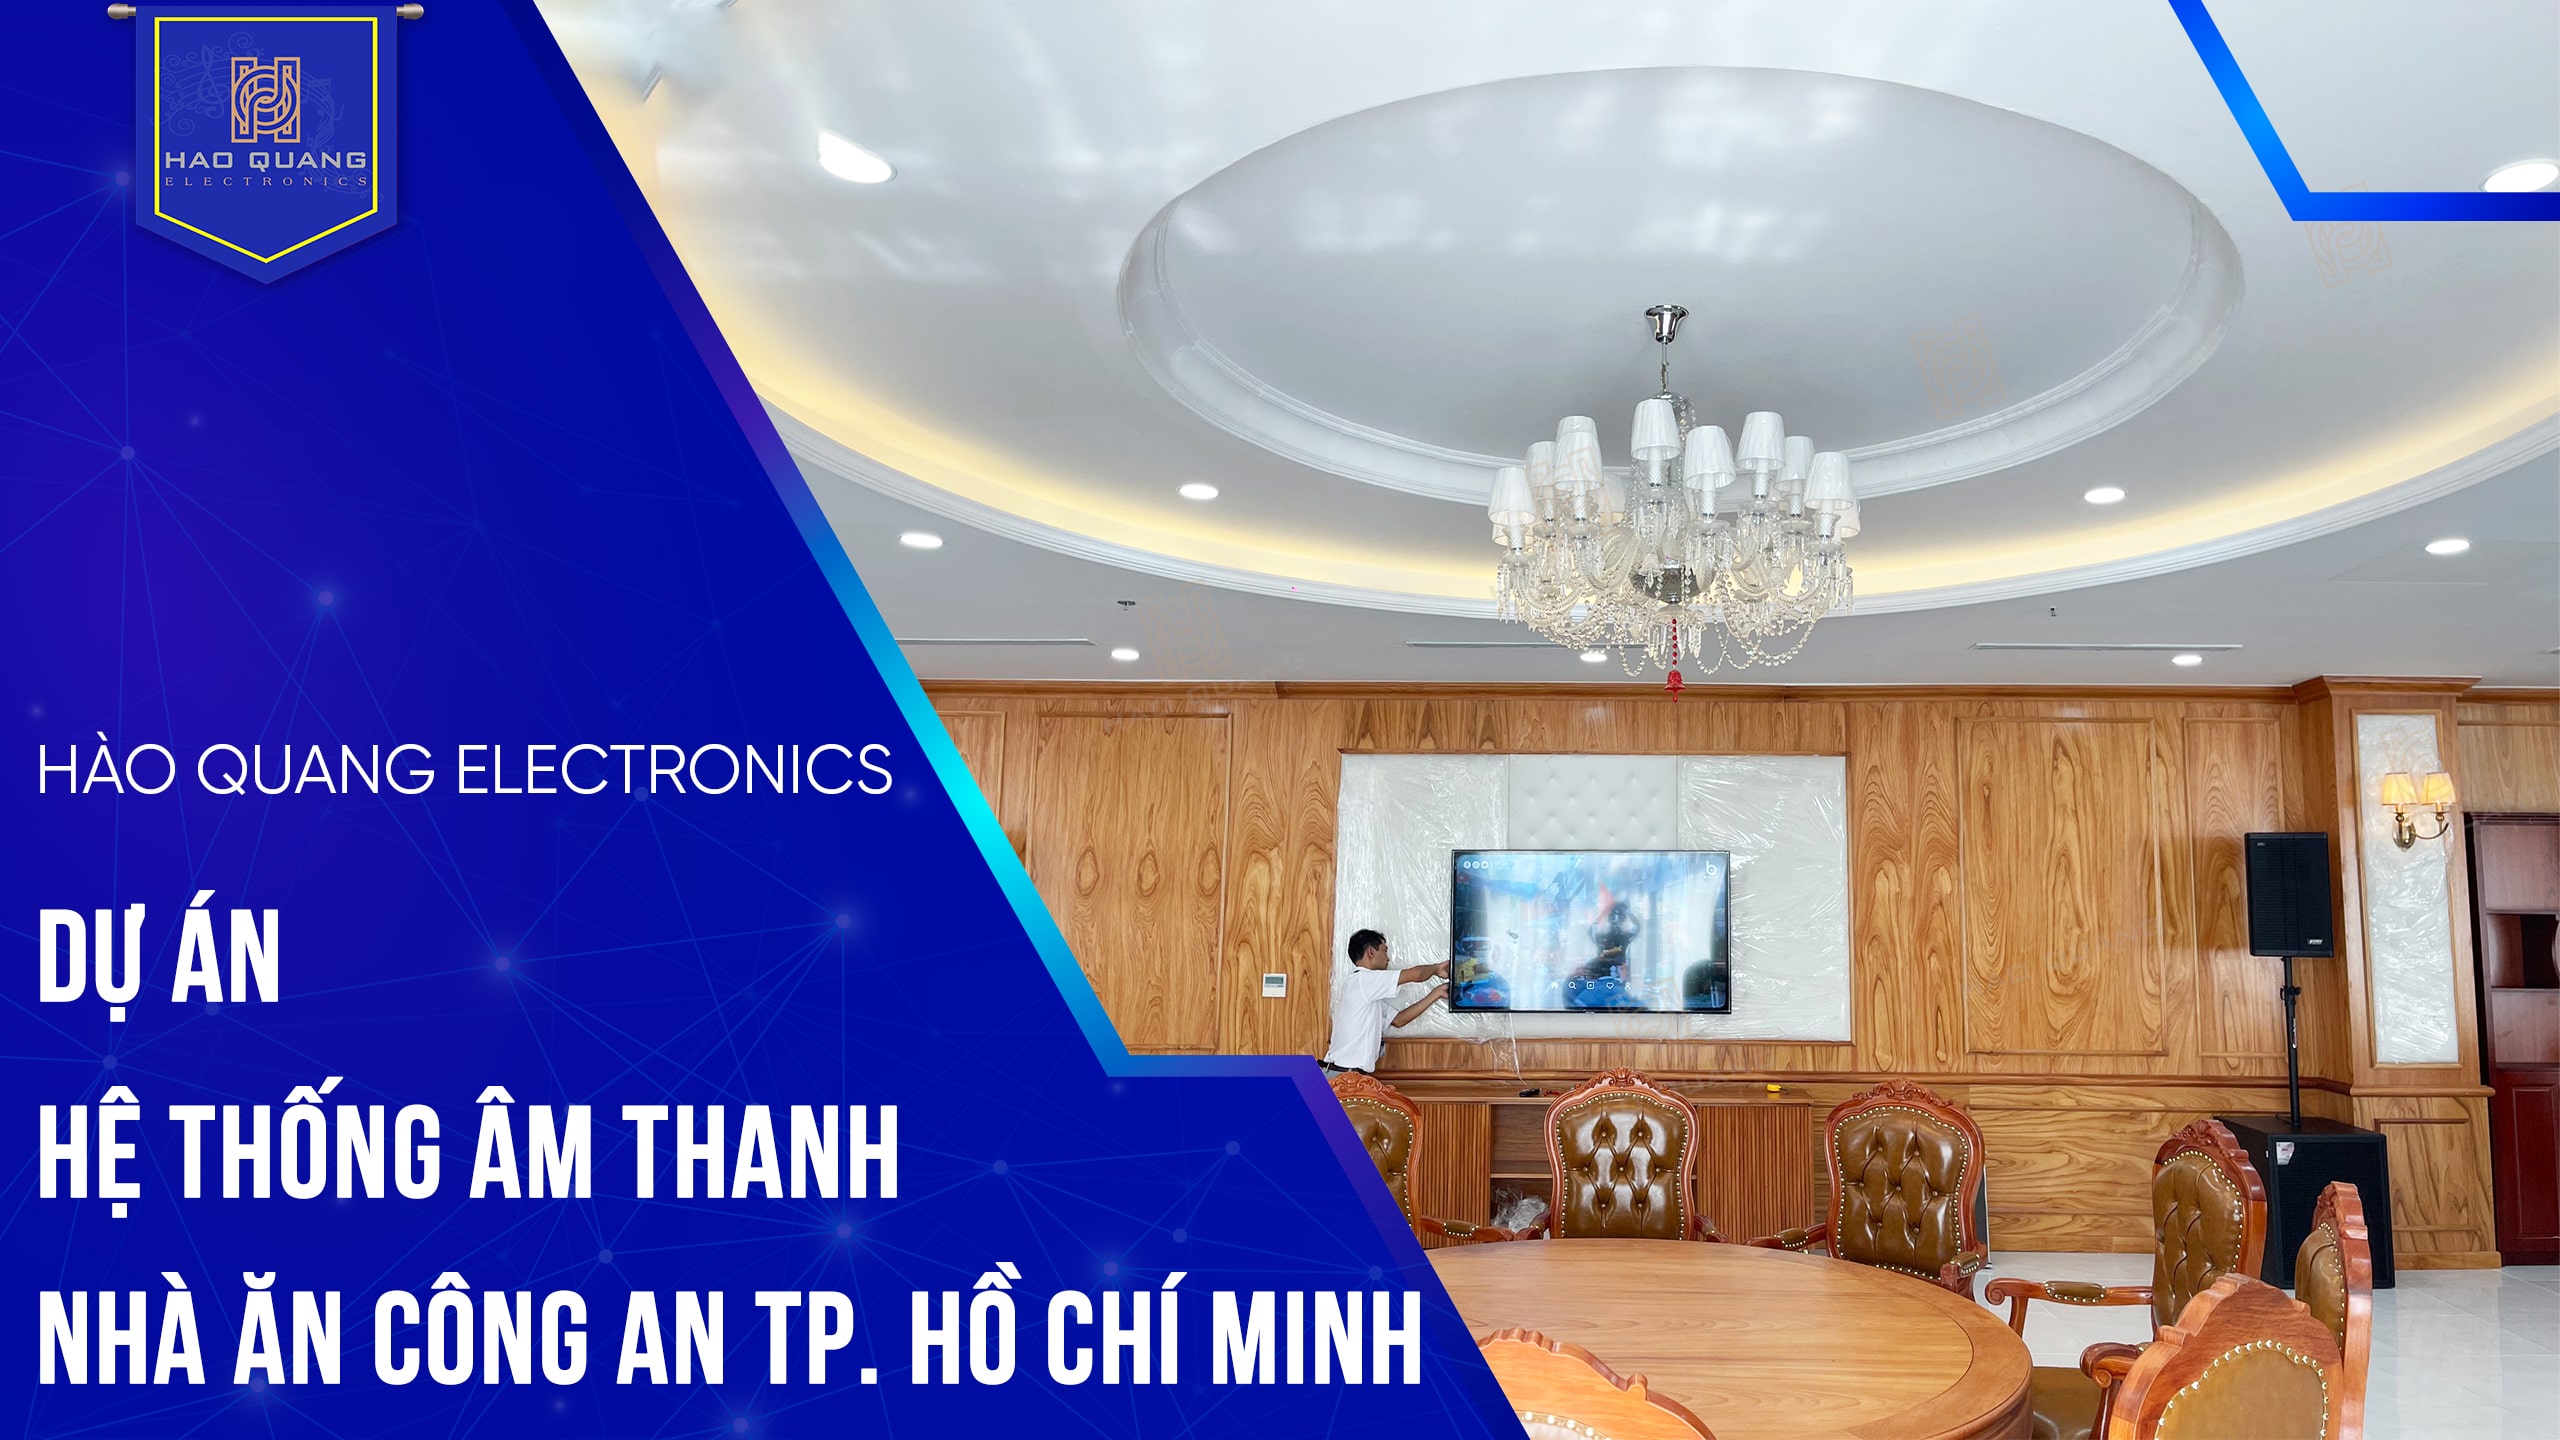 Lắp đặt hệ thống âm thanh cho nhà ăn Công an TP. Hồ Chí Minh